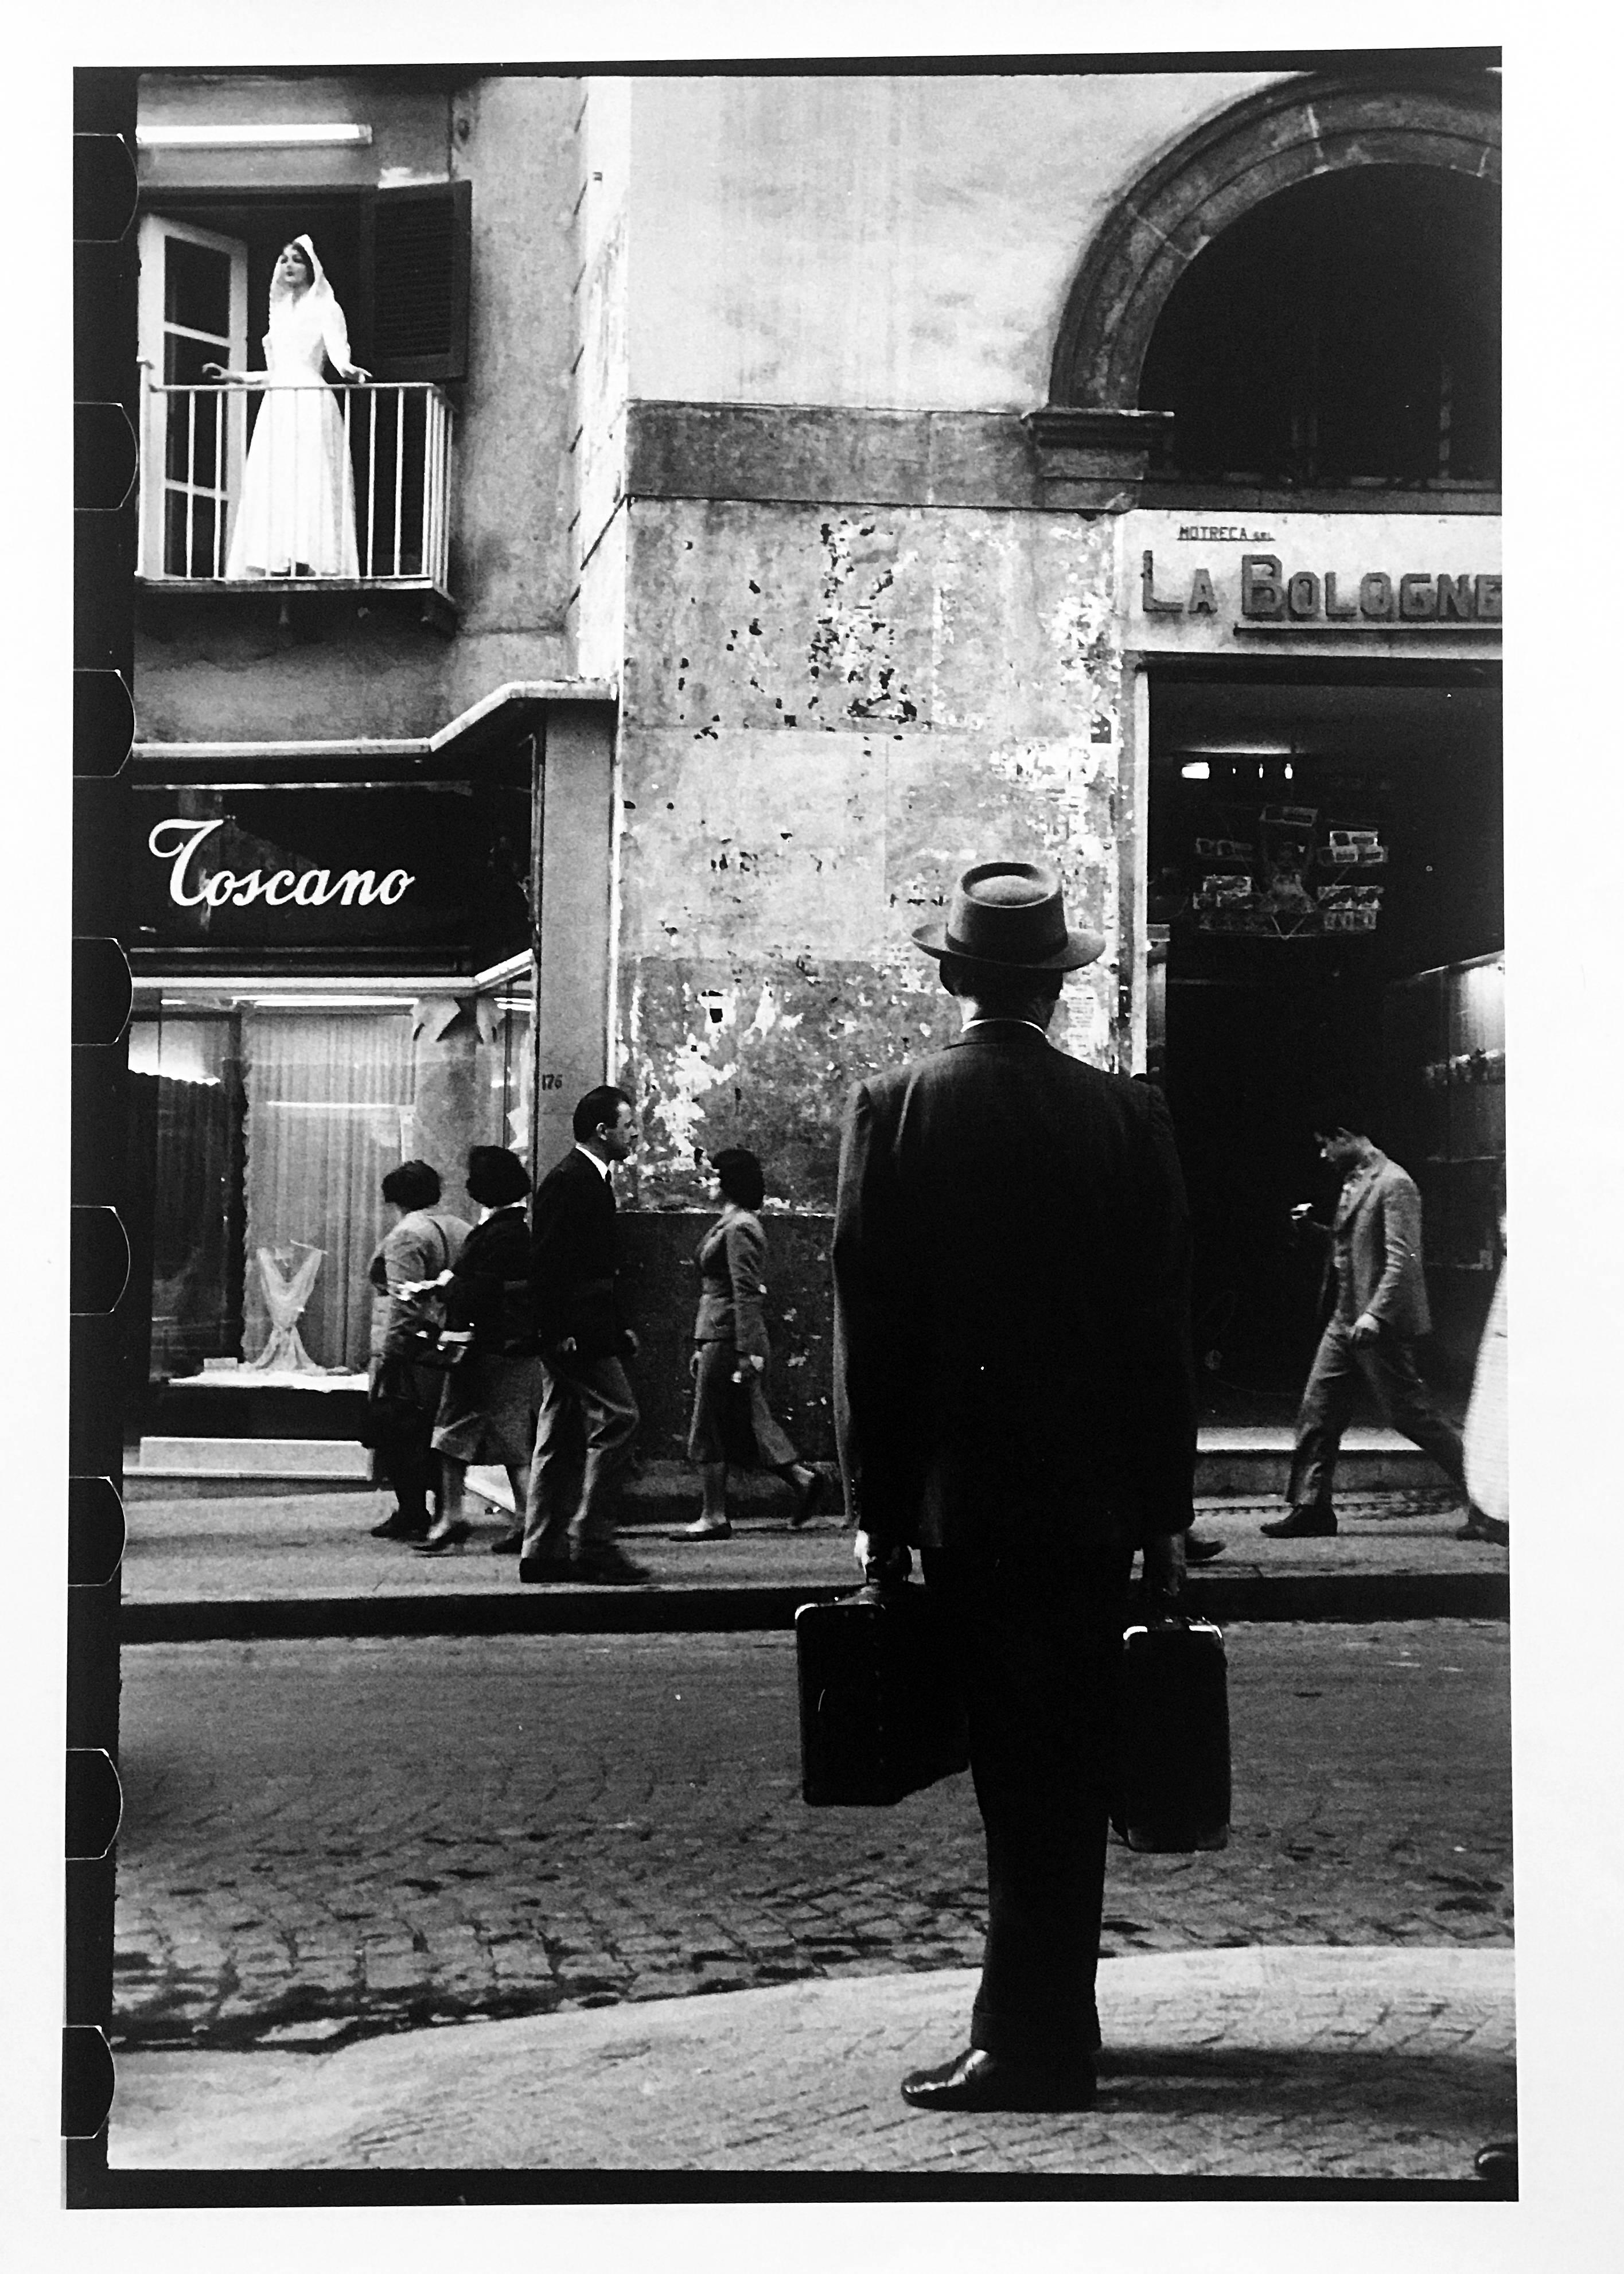 Braut, Neapel, Italien, Schwarz-Weiß-Streetfotografie 1950s